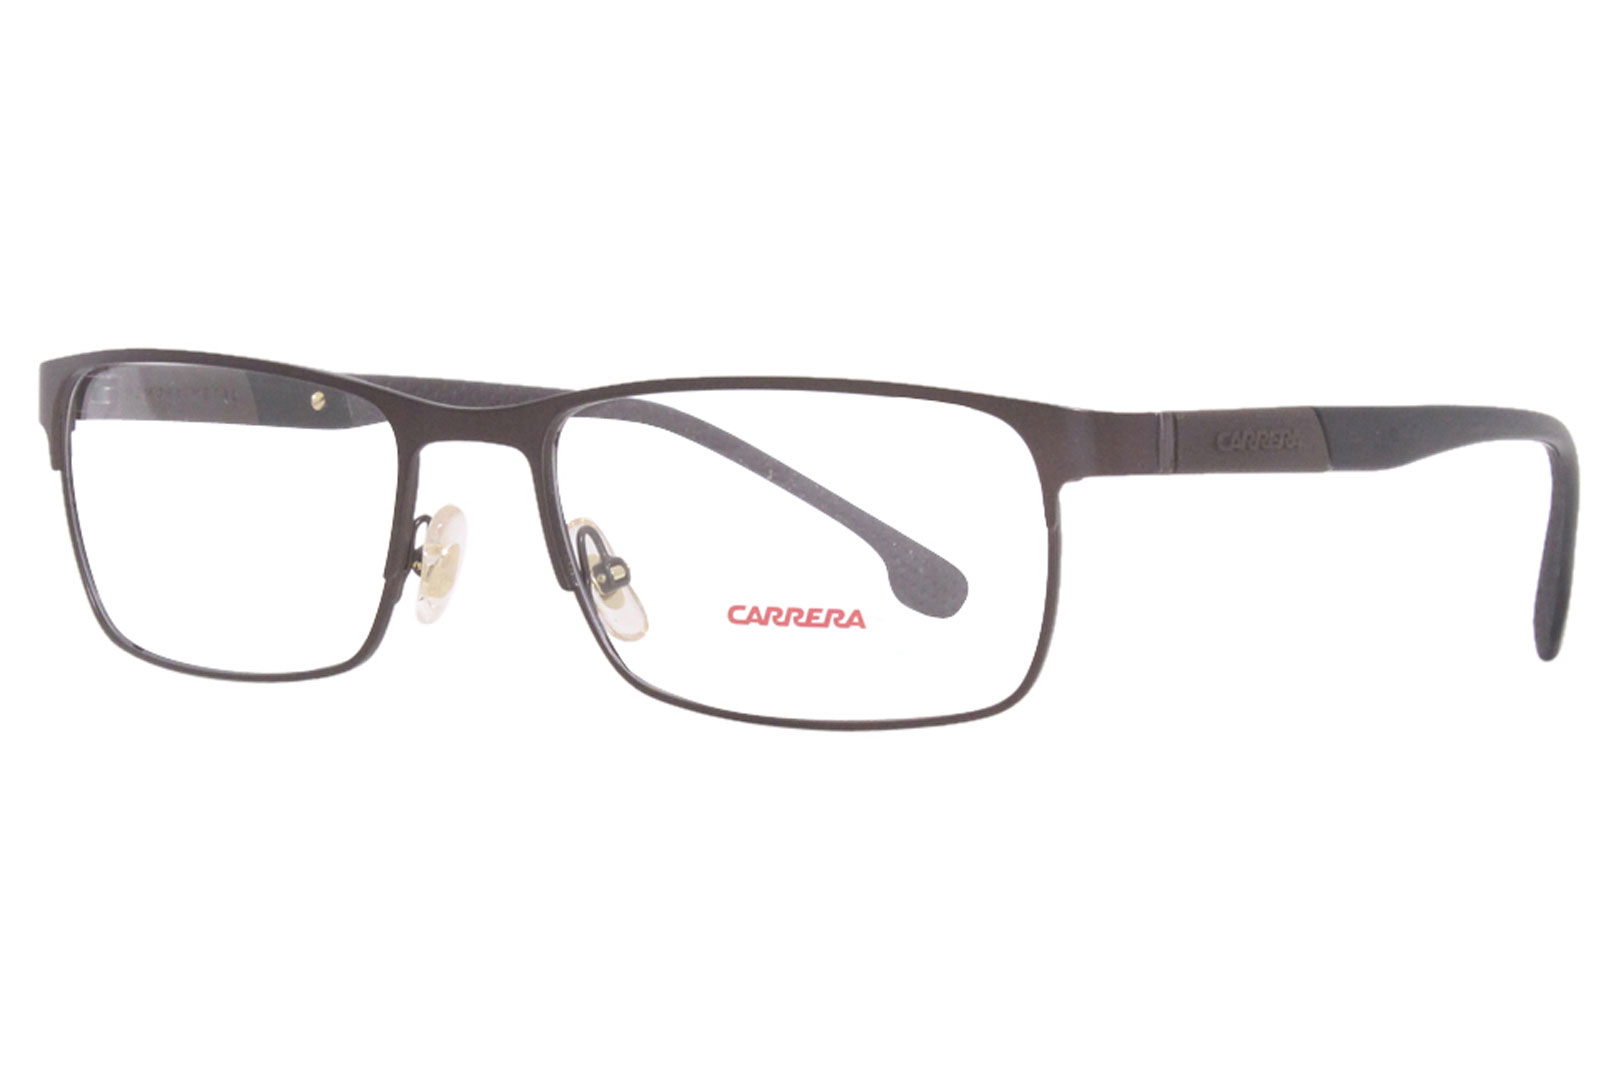 Carrera 8849 Eyeglasses Frame Men's Full Rim Rectangular 